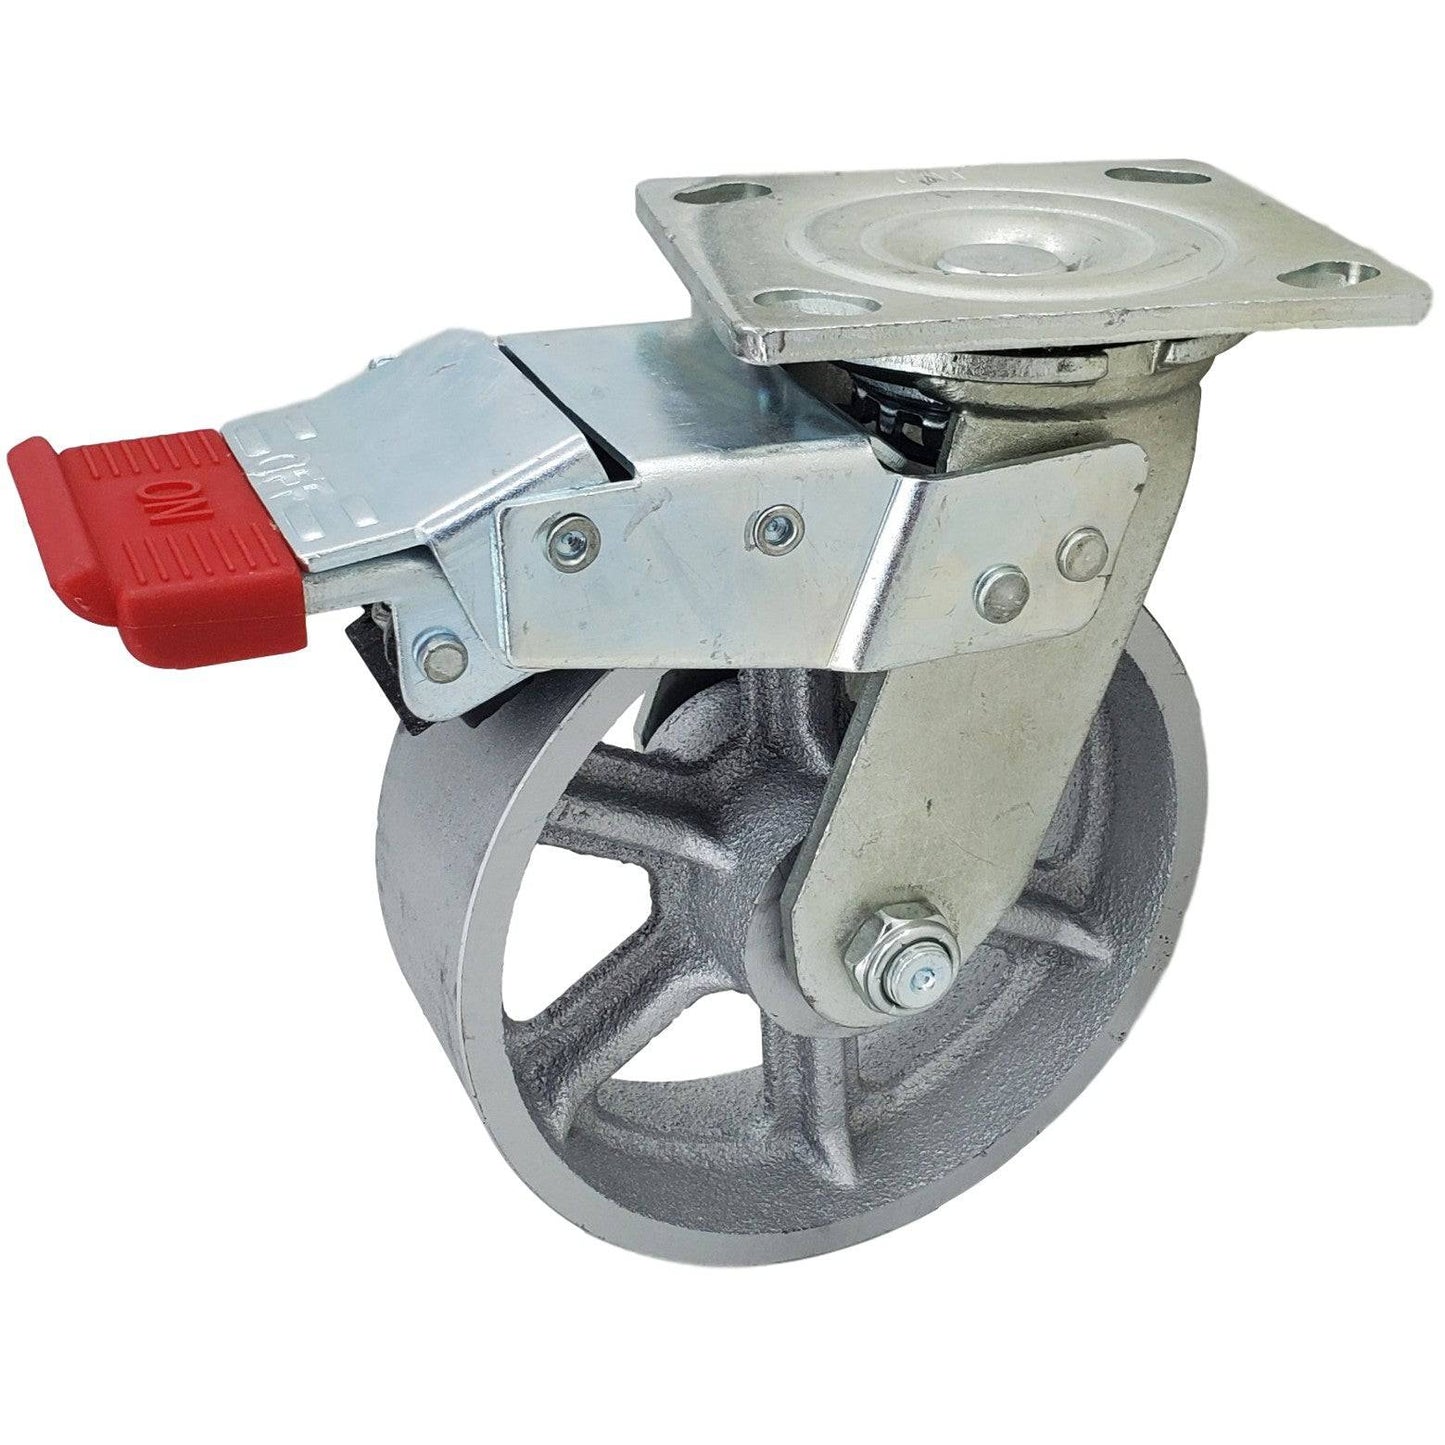 6" x 2" Heavy-Duty Semi-Steel Wheel Swivel Caster w/ Total Lock Brake - 1400 lbs. Cap. - Durable Superior Casters